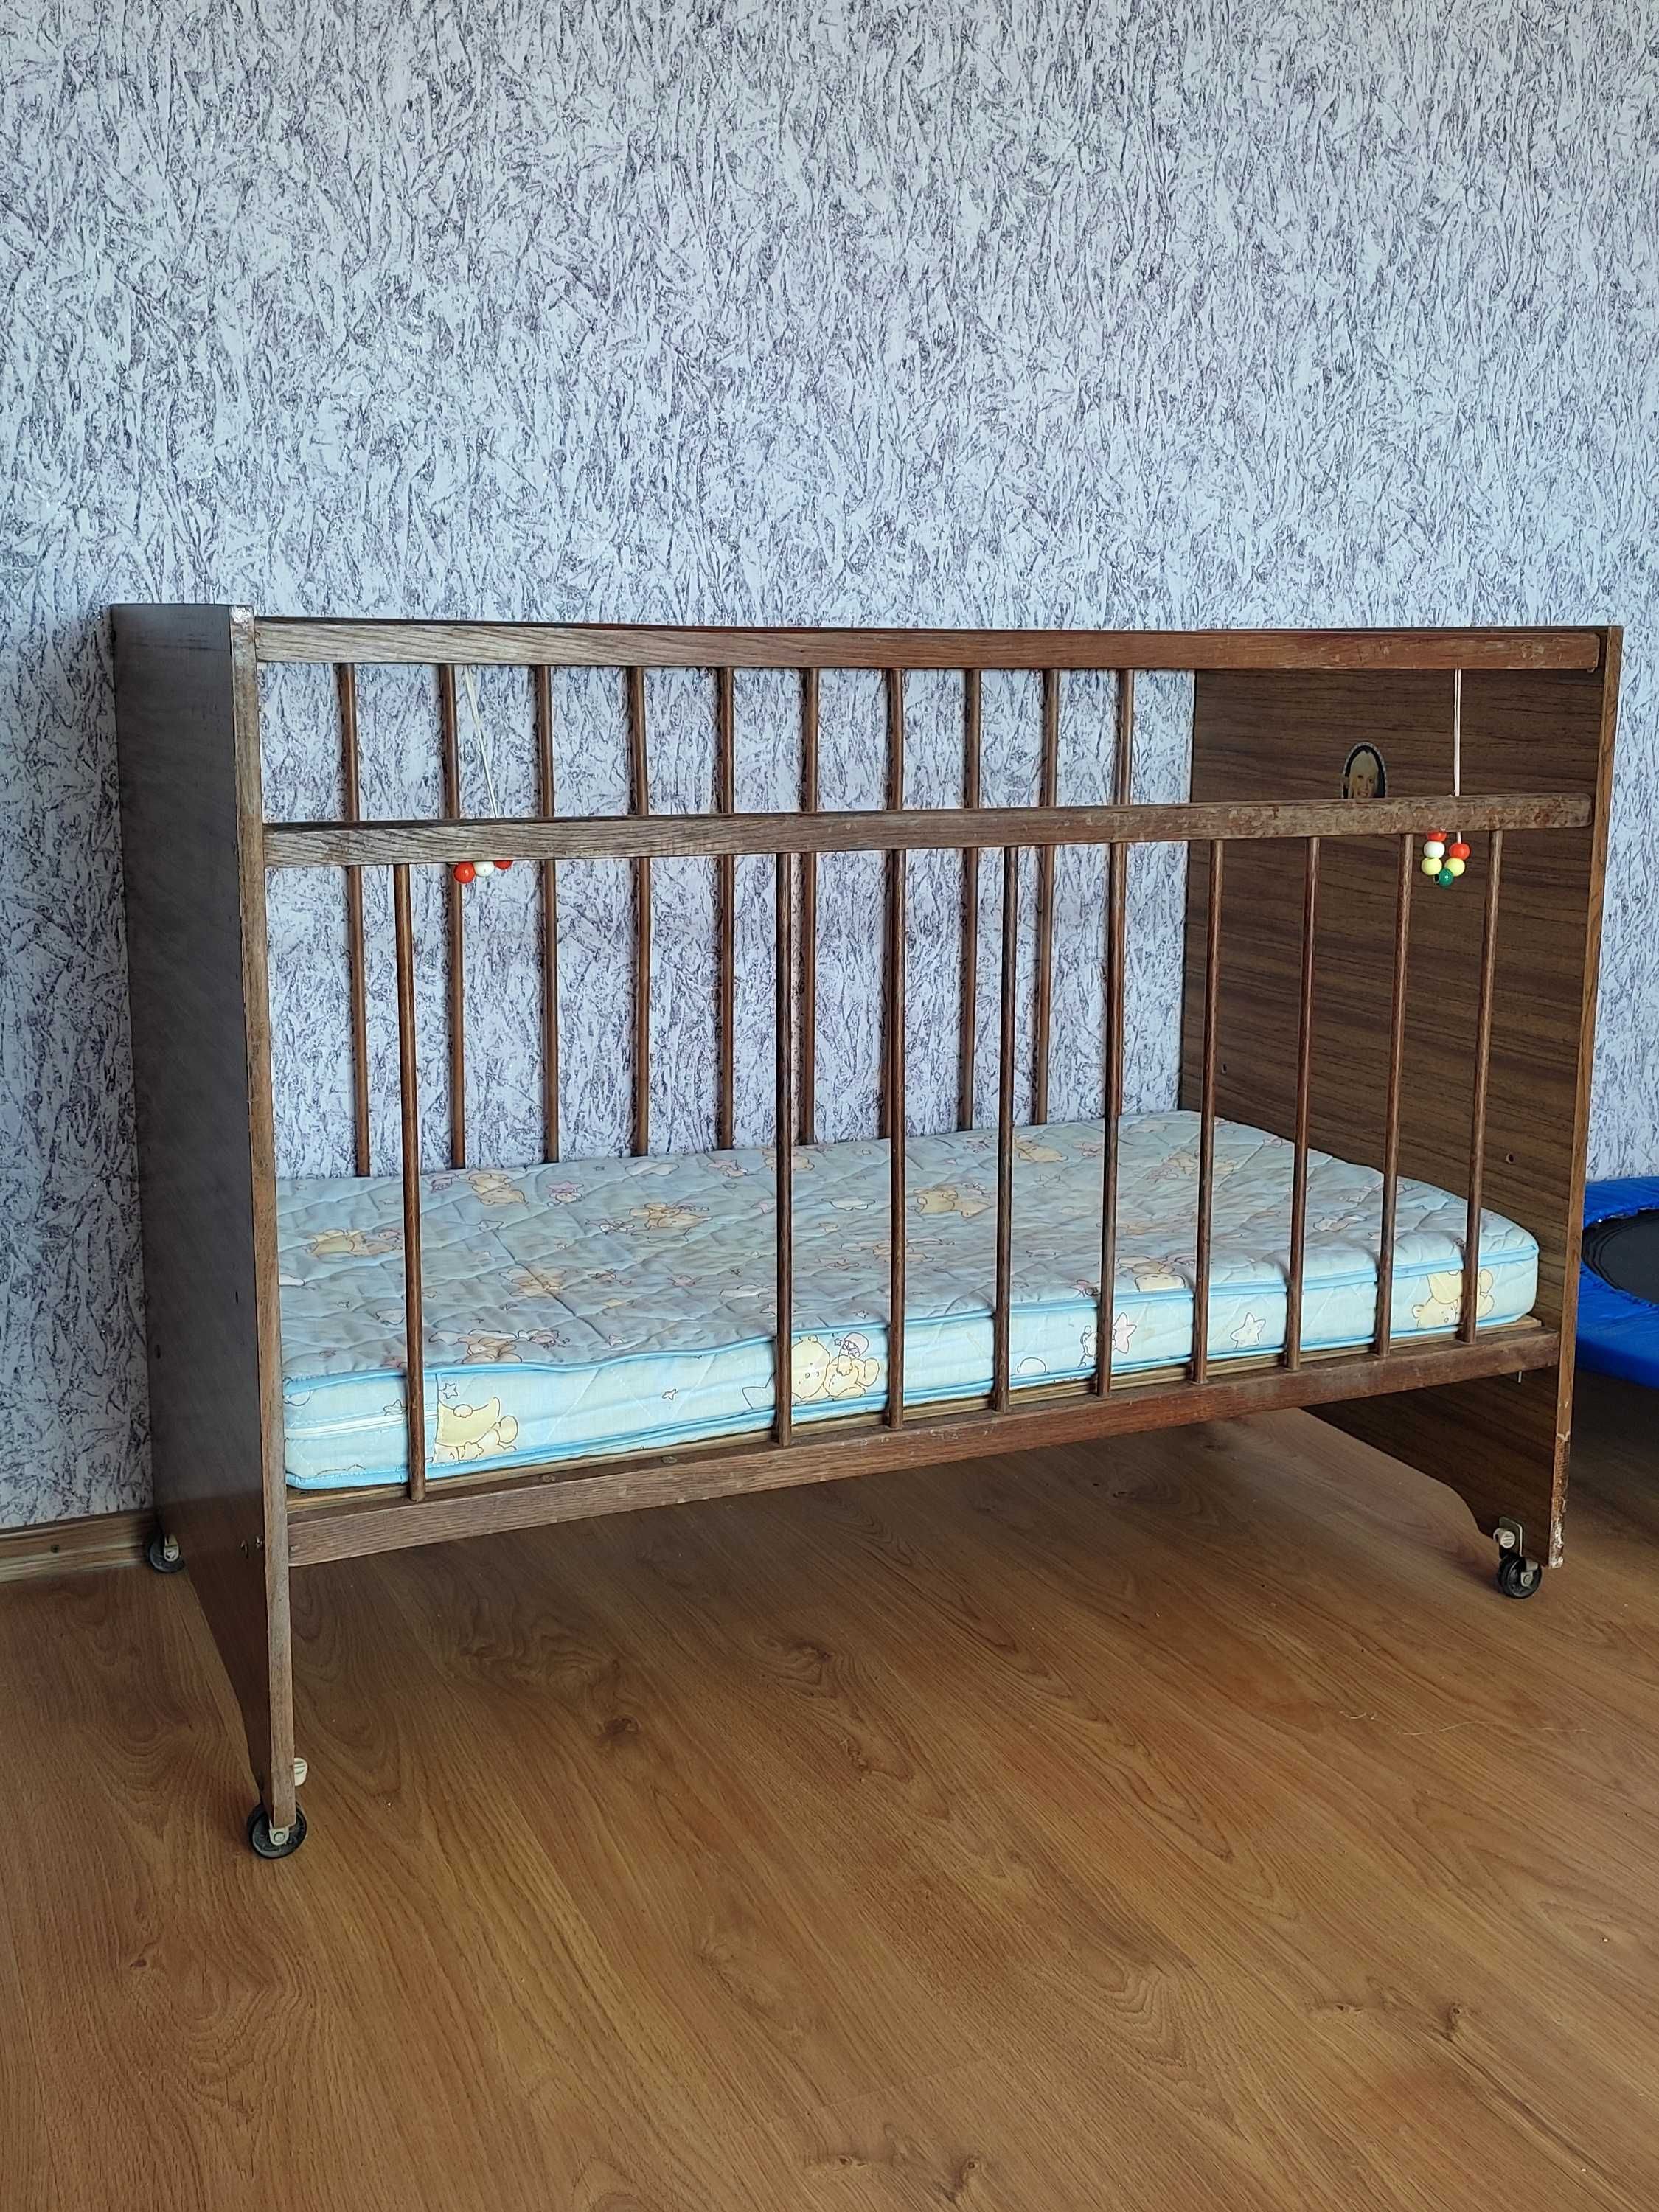 Детская кровать-манеж, кроватка деревянная